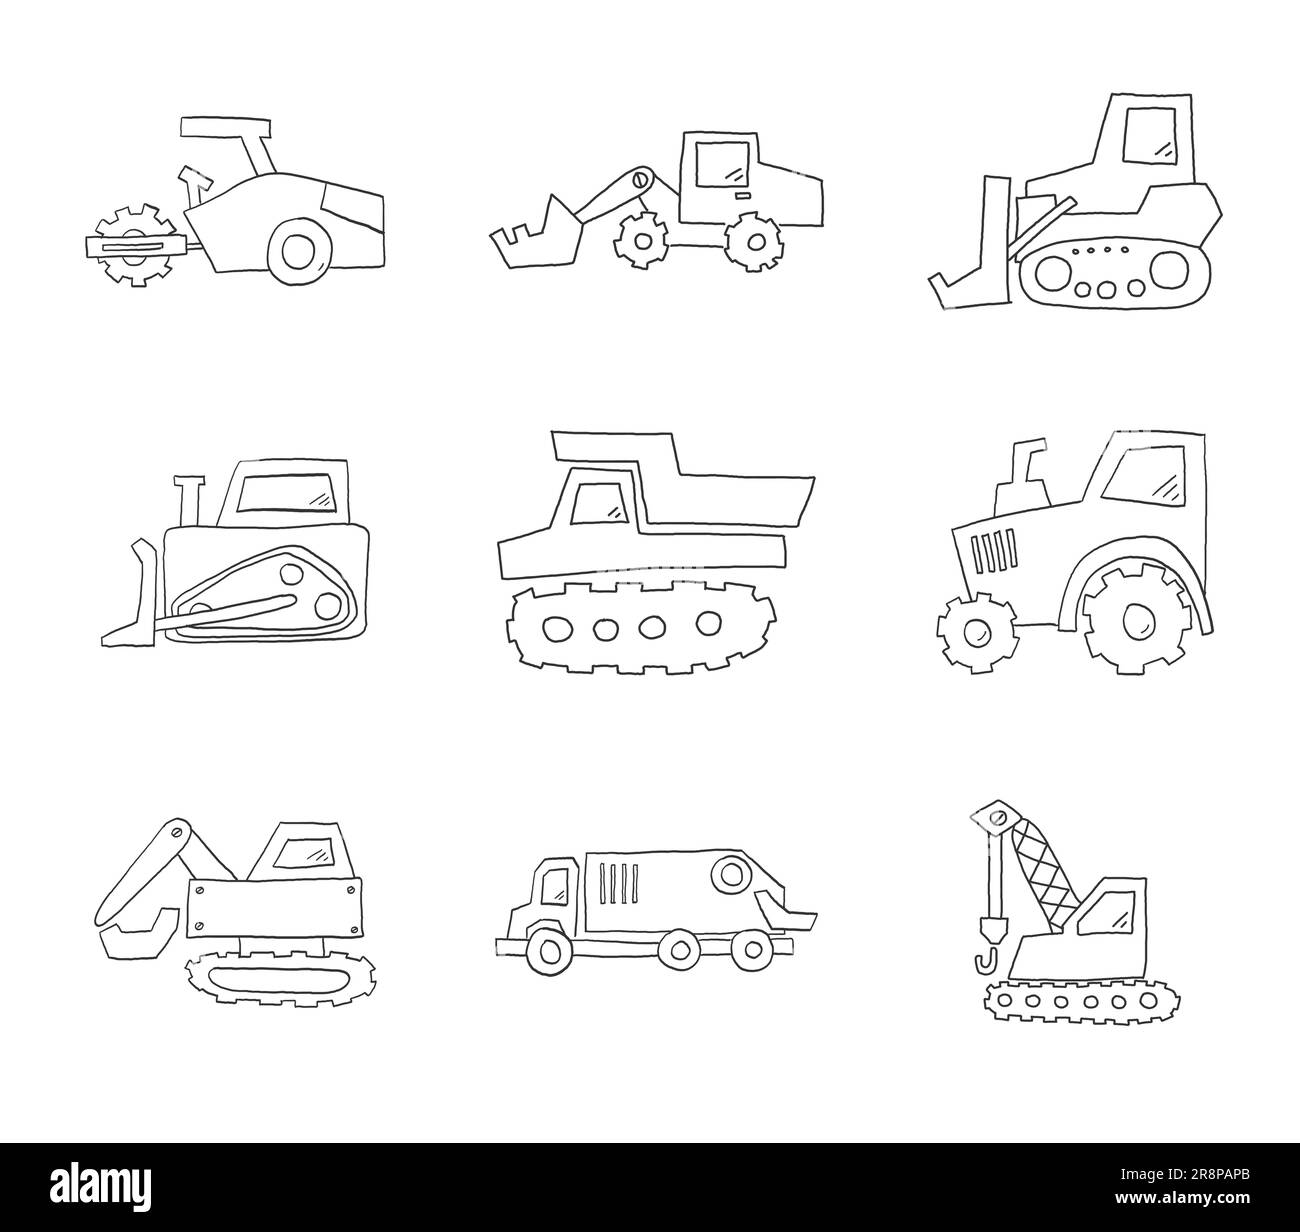 Handgezeichnete Zeichnung einer Icon-Serie für den Transport. Einfache Symbole mit verwackelten Linien. Traktor, Bulldozer und Kipplaster. Set von Baumaschinen Stock Vektor